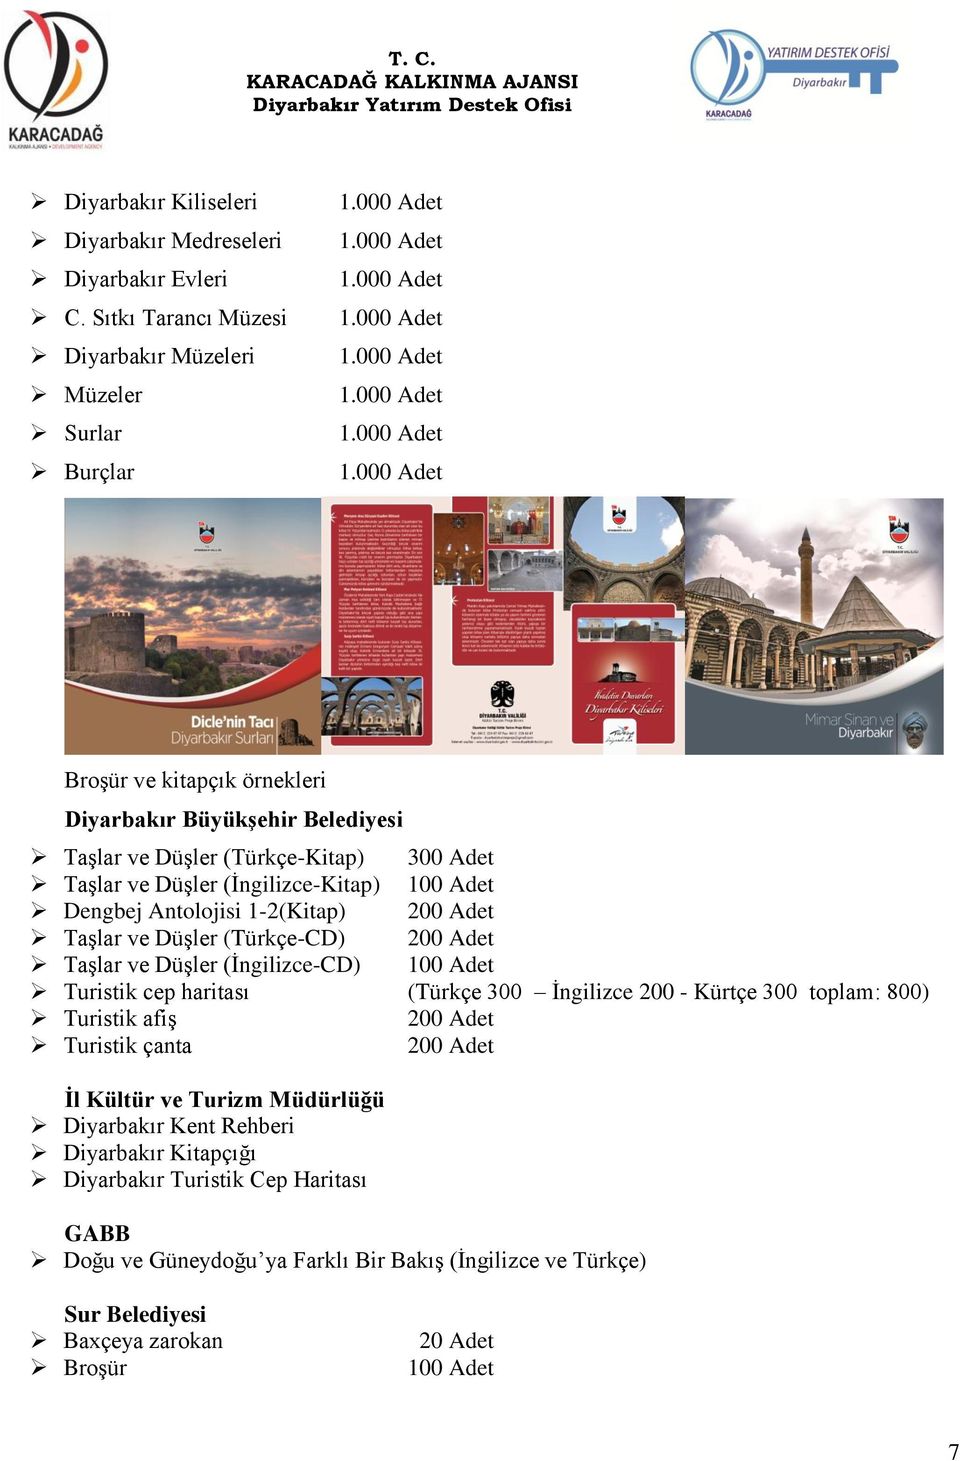 (İngilizce-Kitap) 100 Adet Dengbej Antolojisi 1-2(Kitap) 200 Adet Taşlar ve Düşler (Türkçe-CD) 200 Adet Taşlar ve Düşler (İngilizce-CD) 100 Adet Turistik cep haritası (Türkçe 300